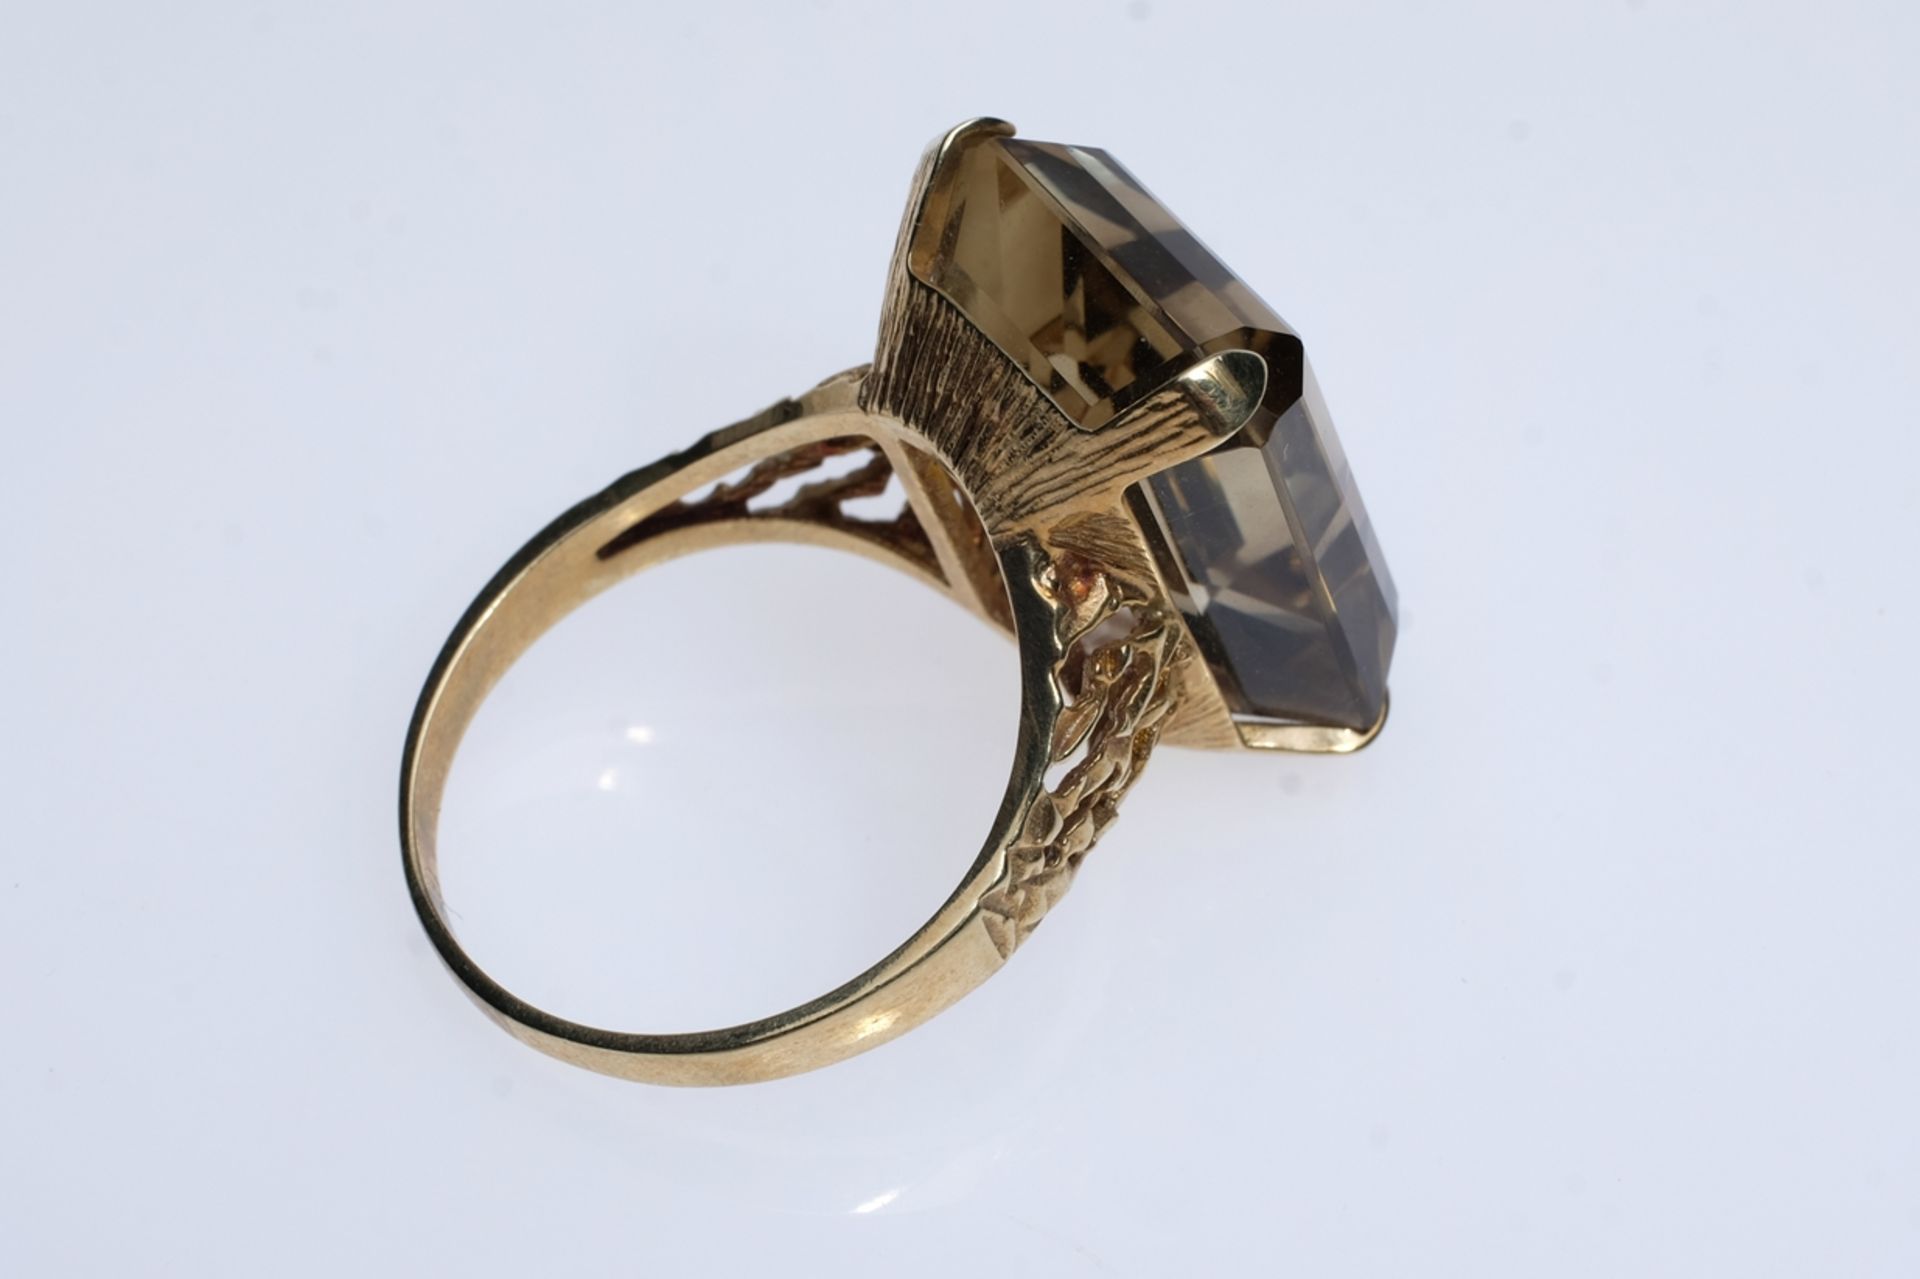 Ring besetzt mit geschliffenem Stein (20x15mm), wohl Smoky Quartz, in vier Krappen filigran gefasst - Bild 2 aus 3